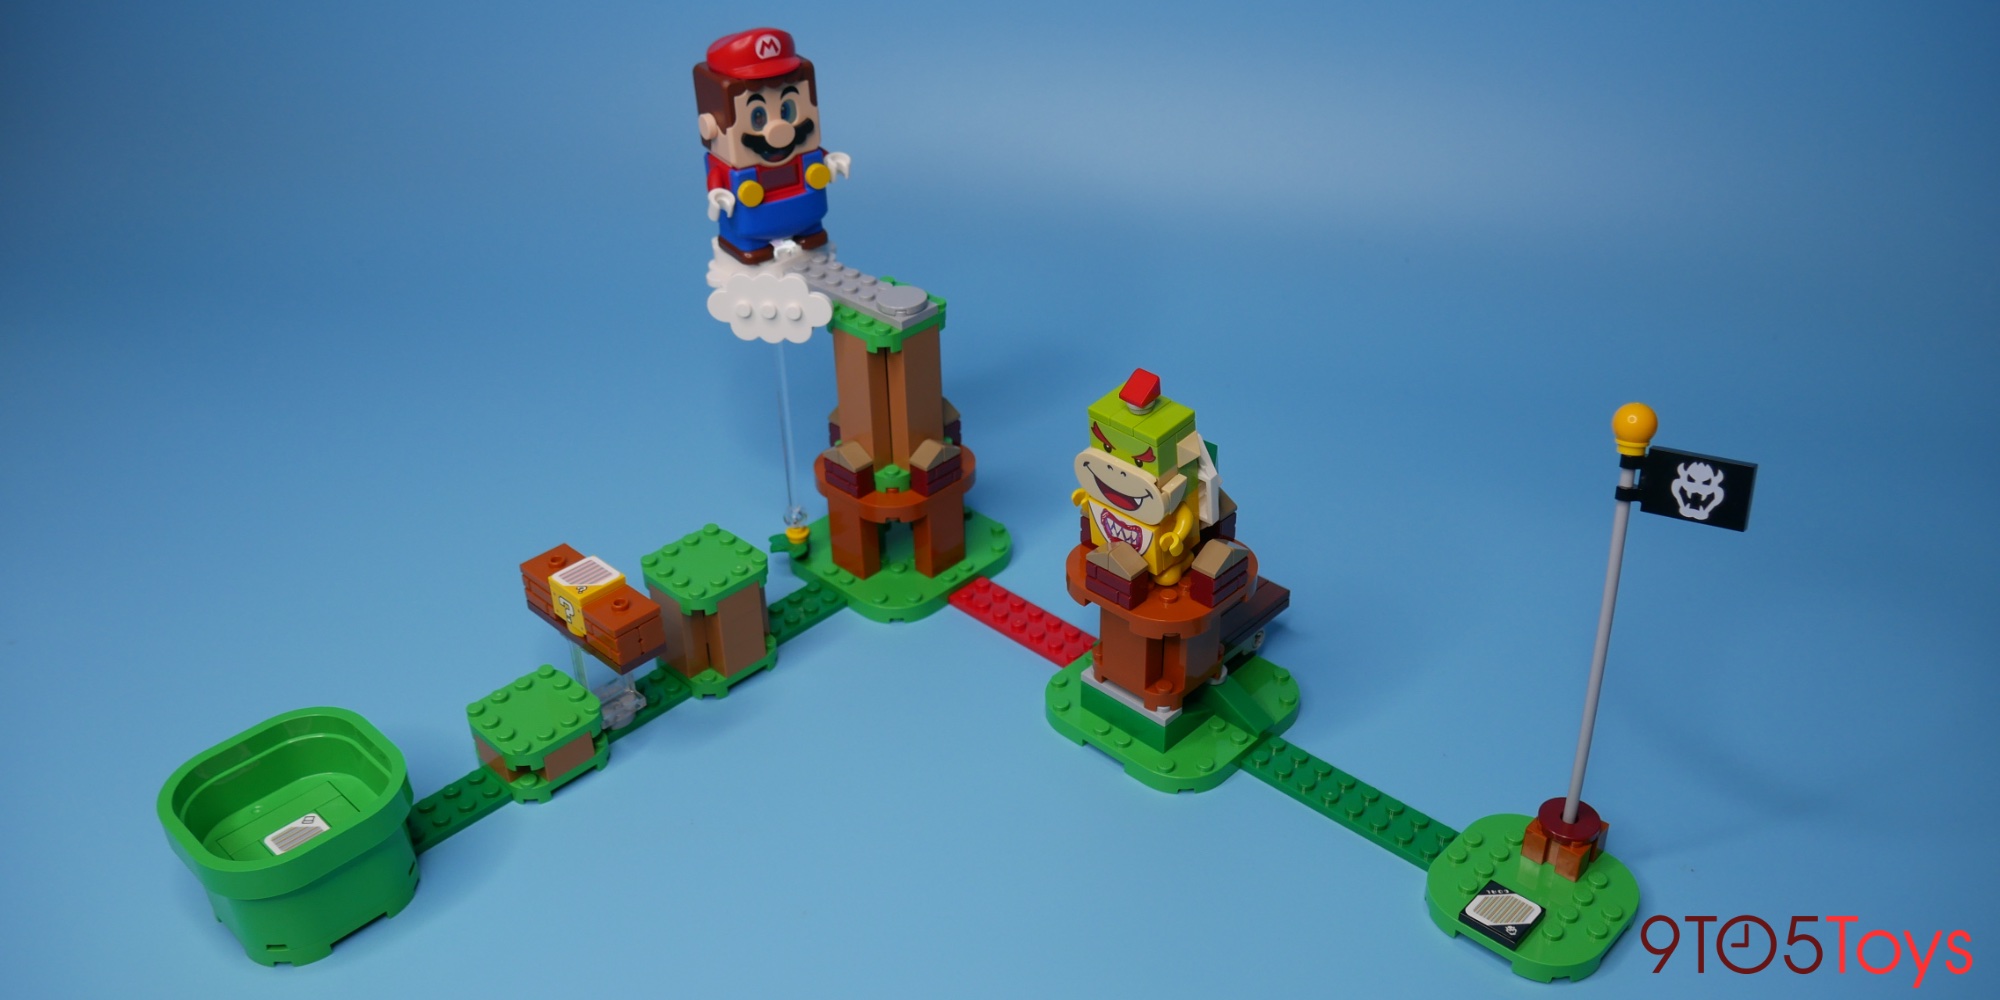 LEGO Super Mario Review